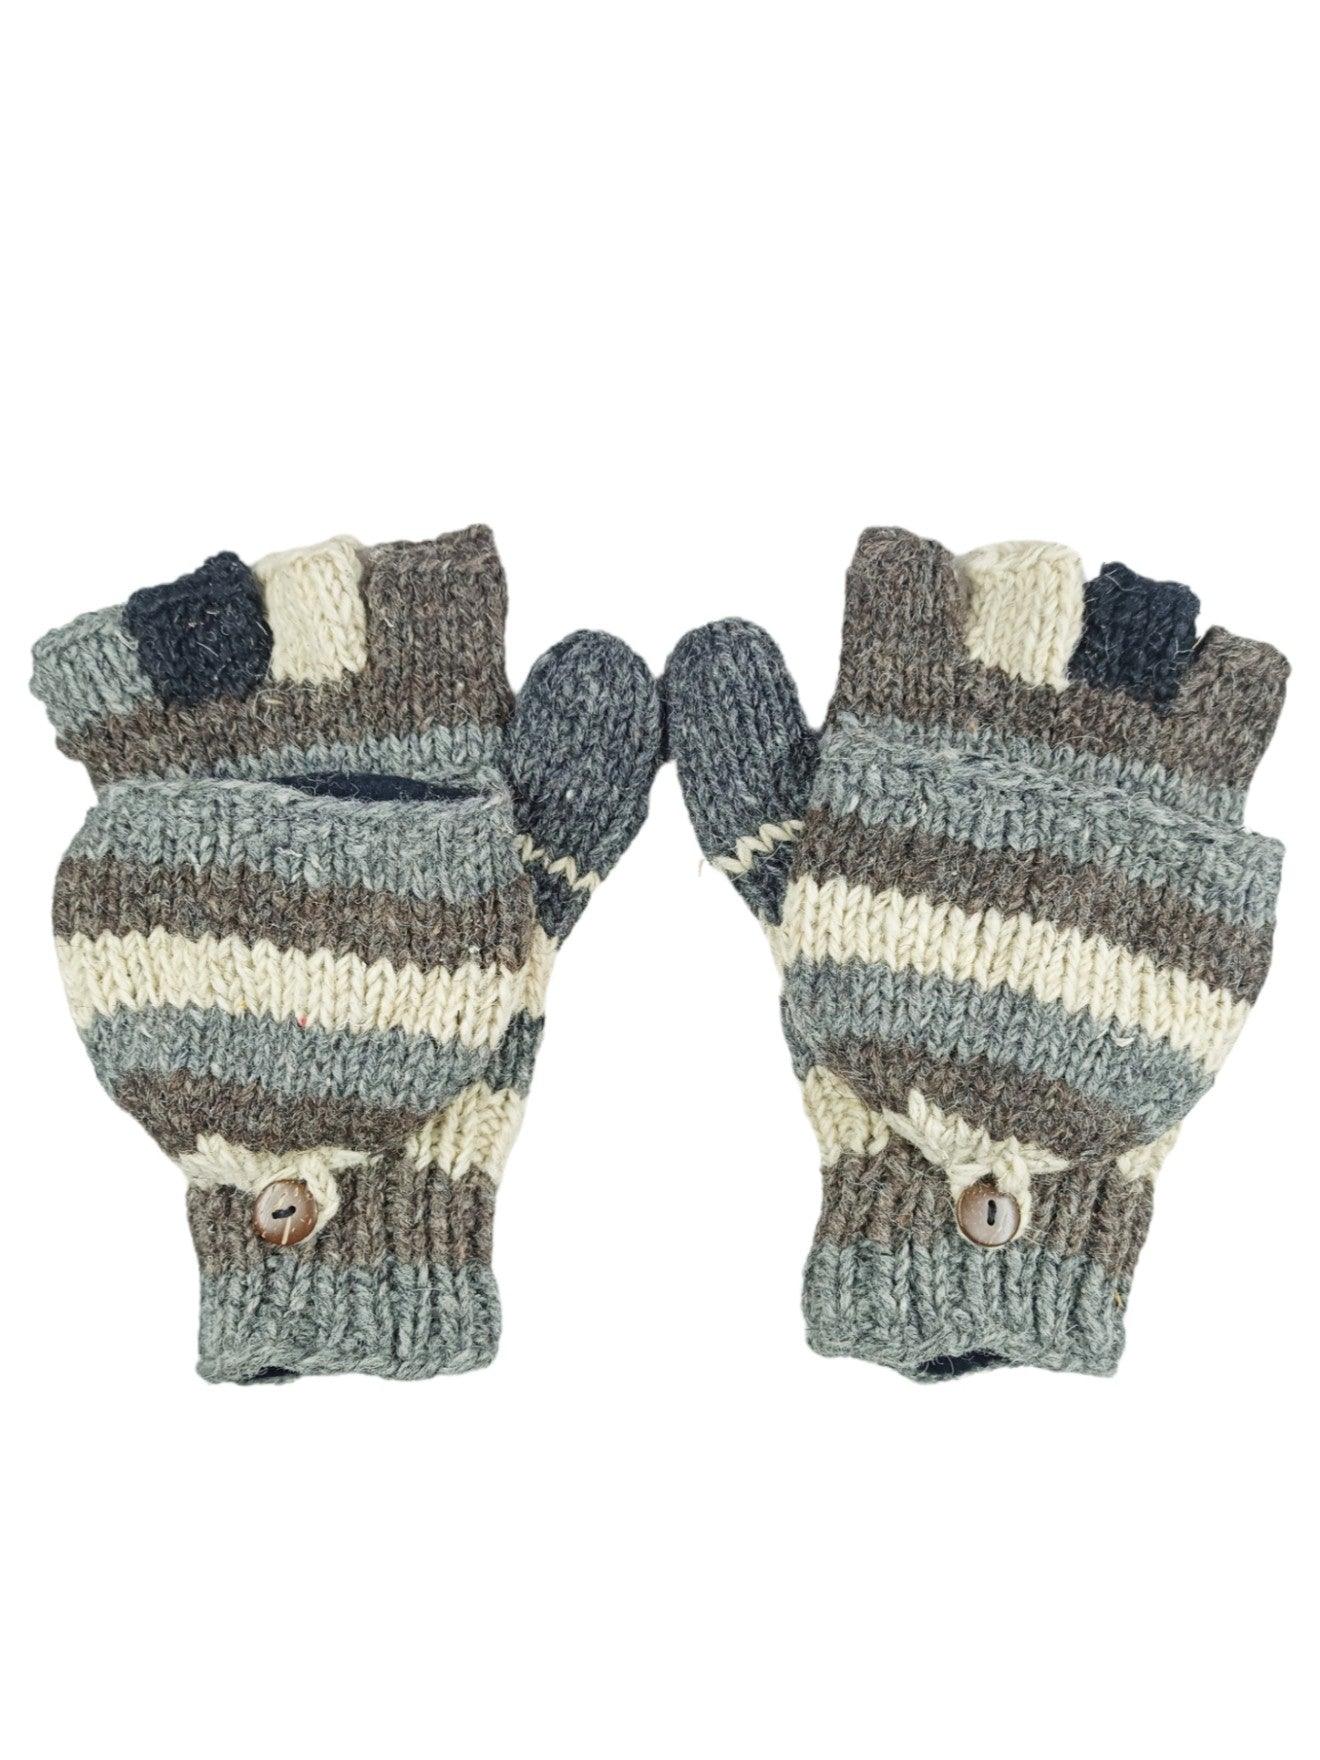 Woolen Fingerless Gloves, Mittens